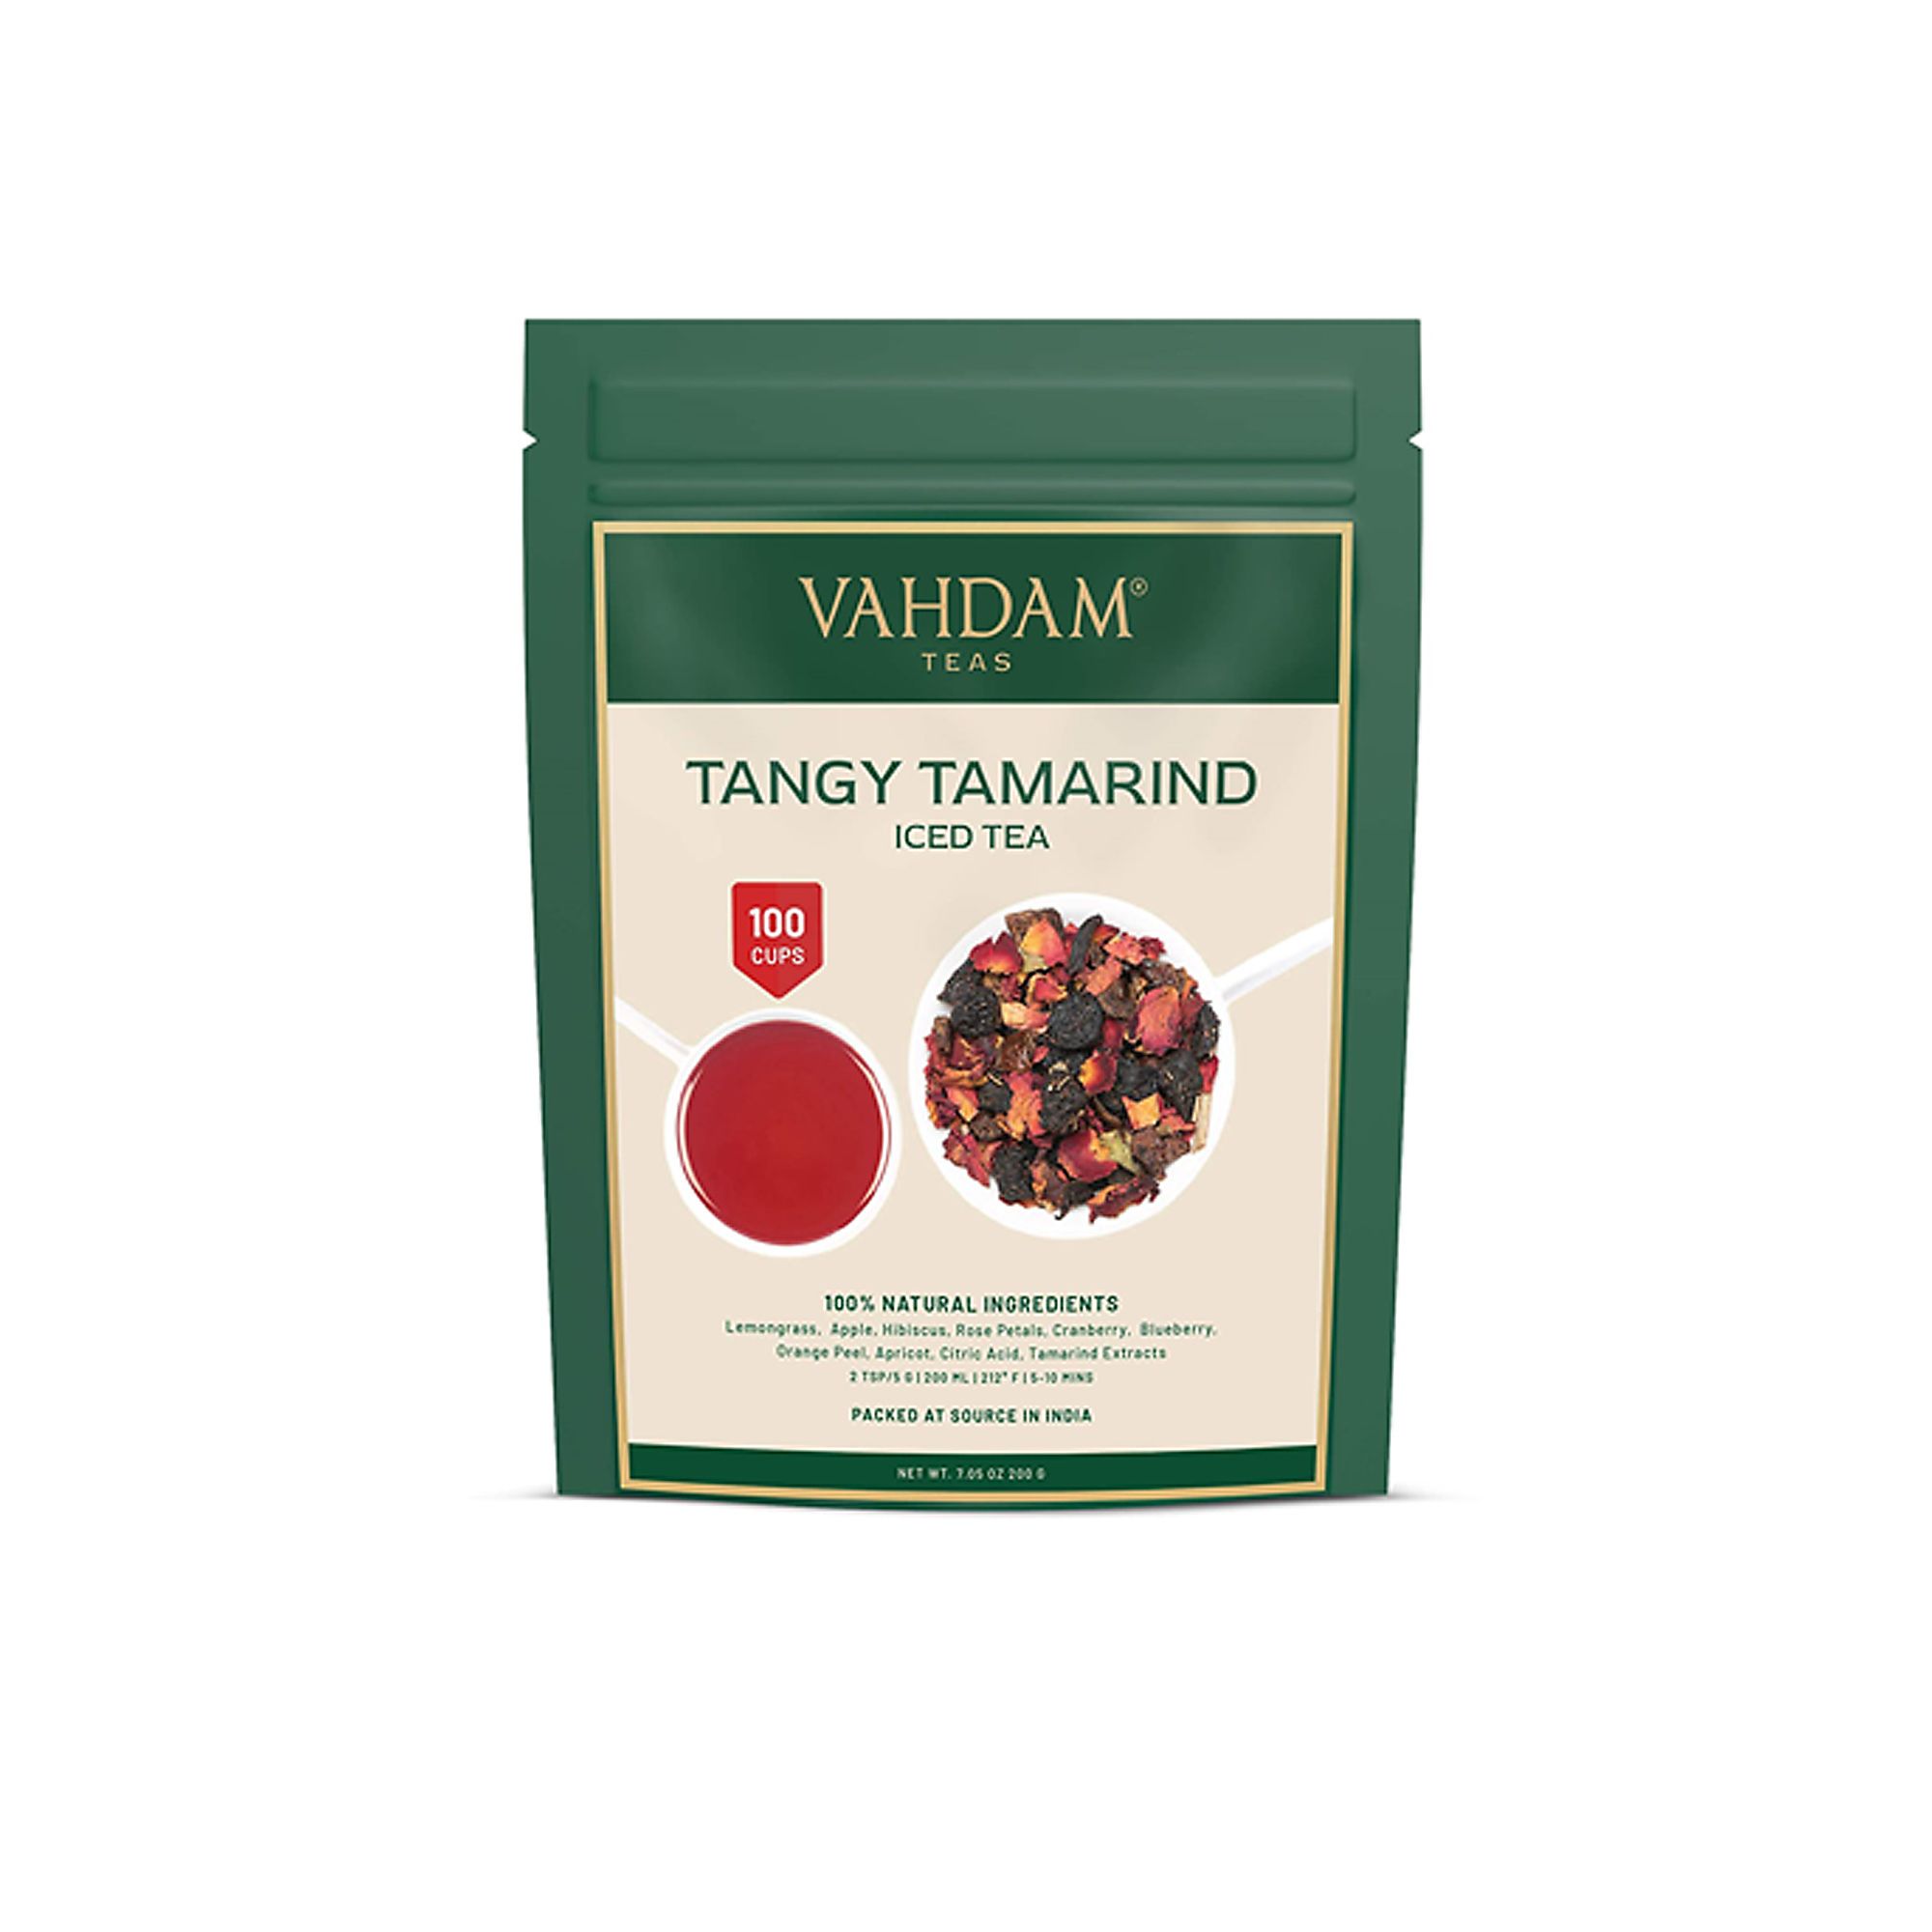 Tè freddo al tamarindo piccante con cocco tostato